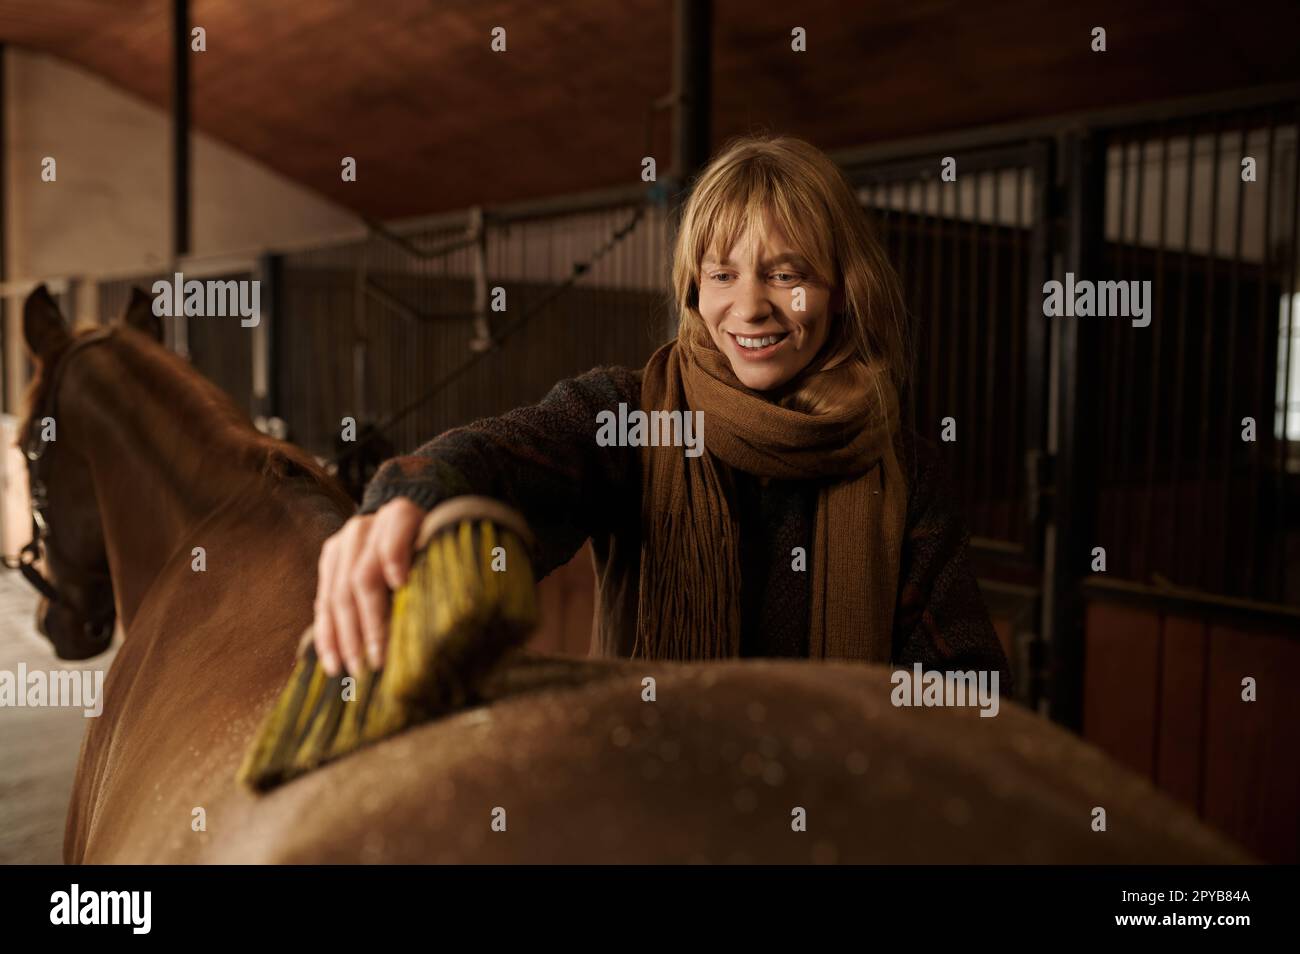 Gros plan portrait d'une horsewoman heureuse en nettoyant son étalon à la brosse Banque D'Images